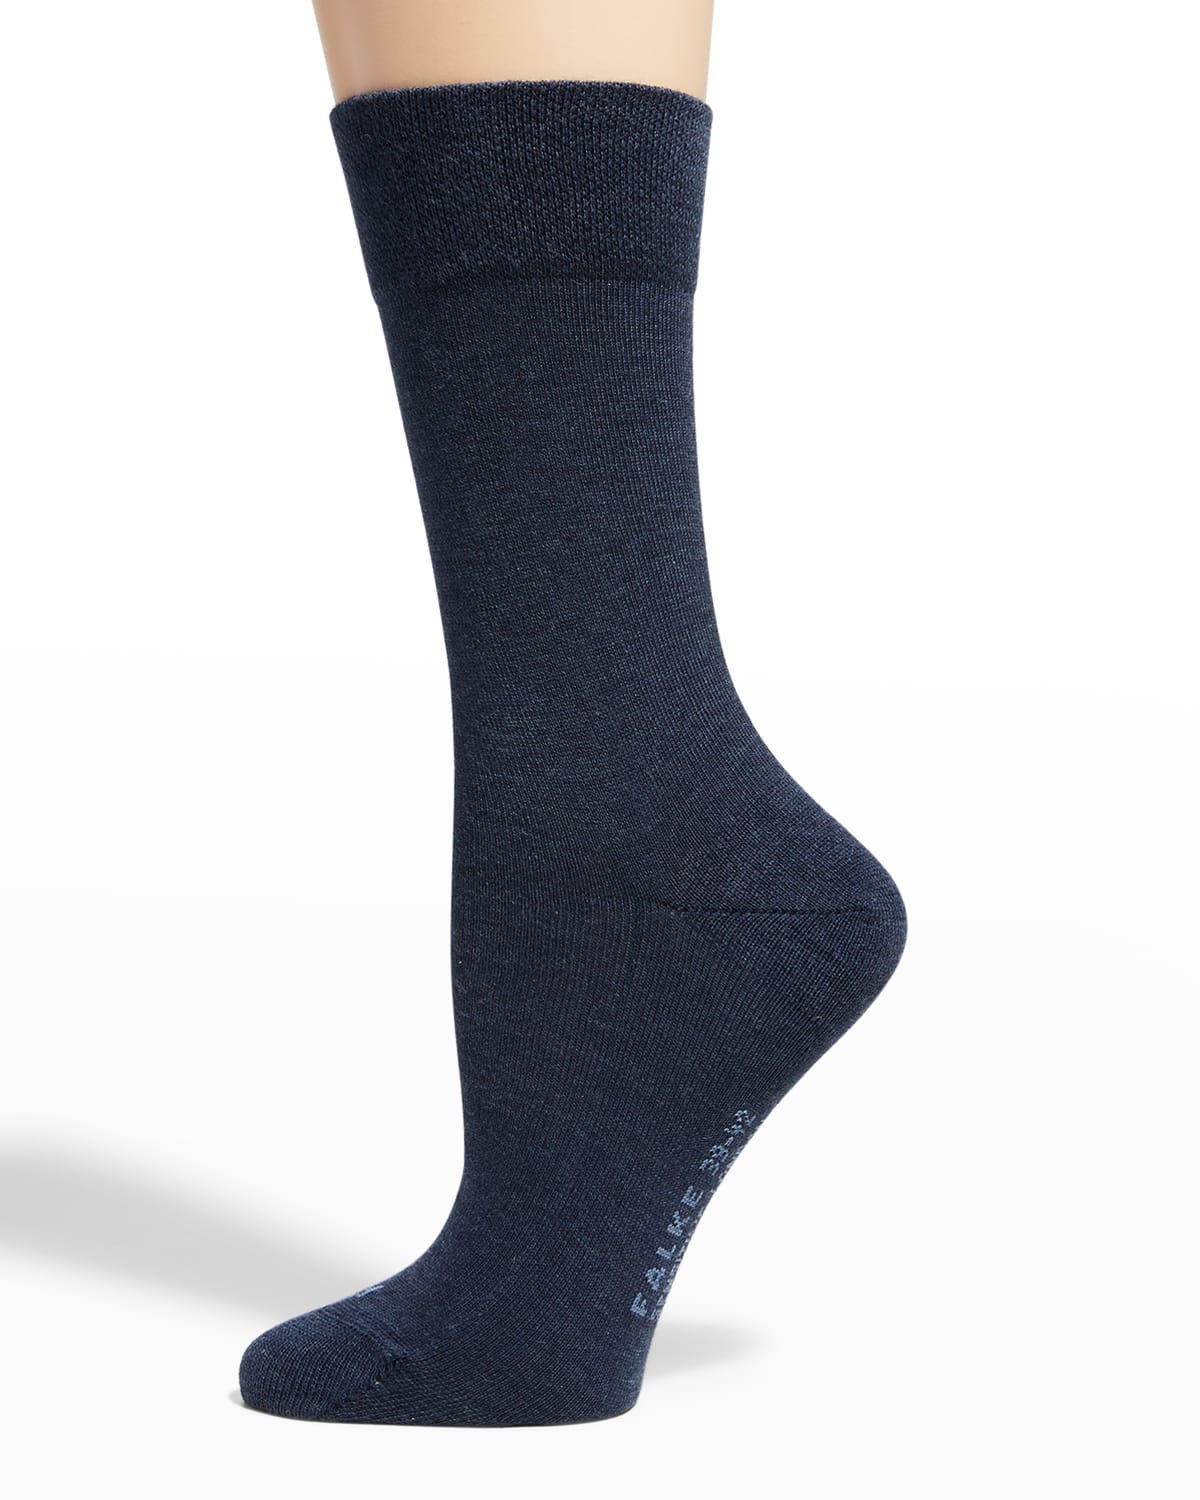 Falke London Ankle Socks In Navy Blue